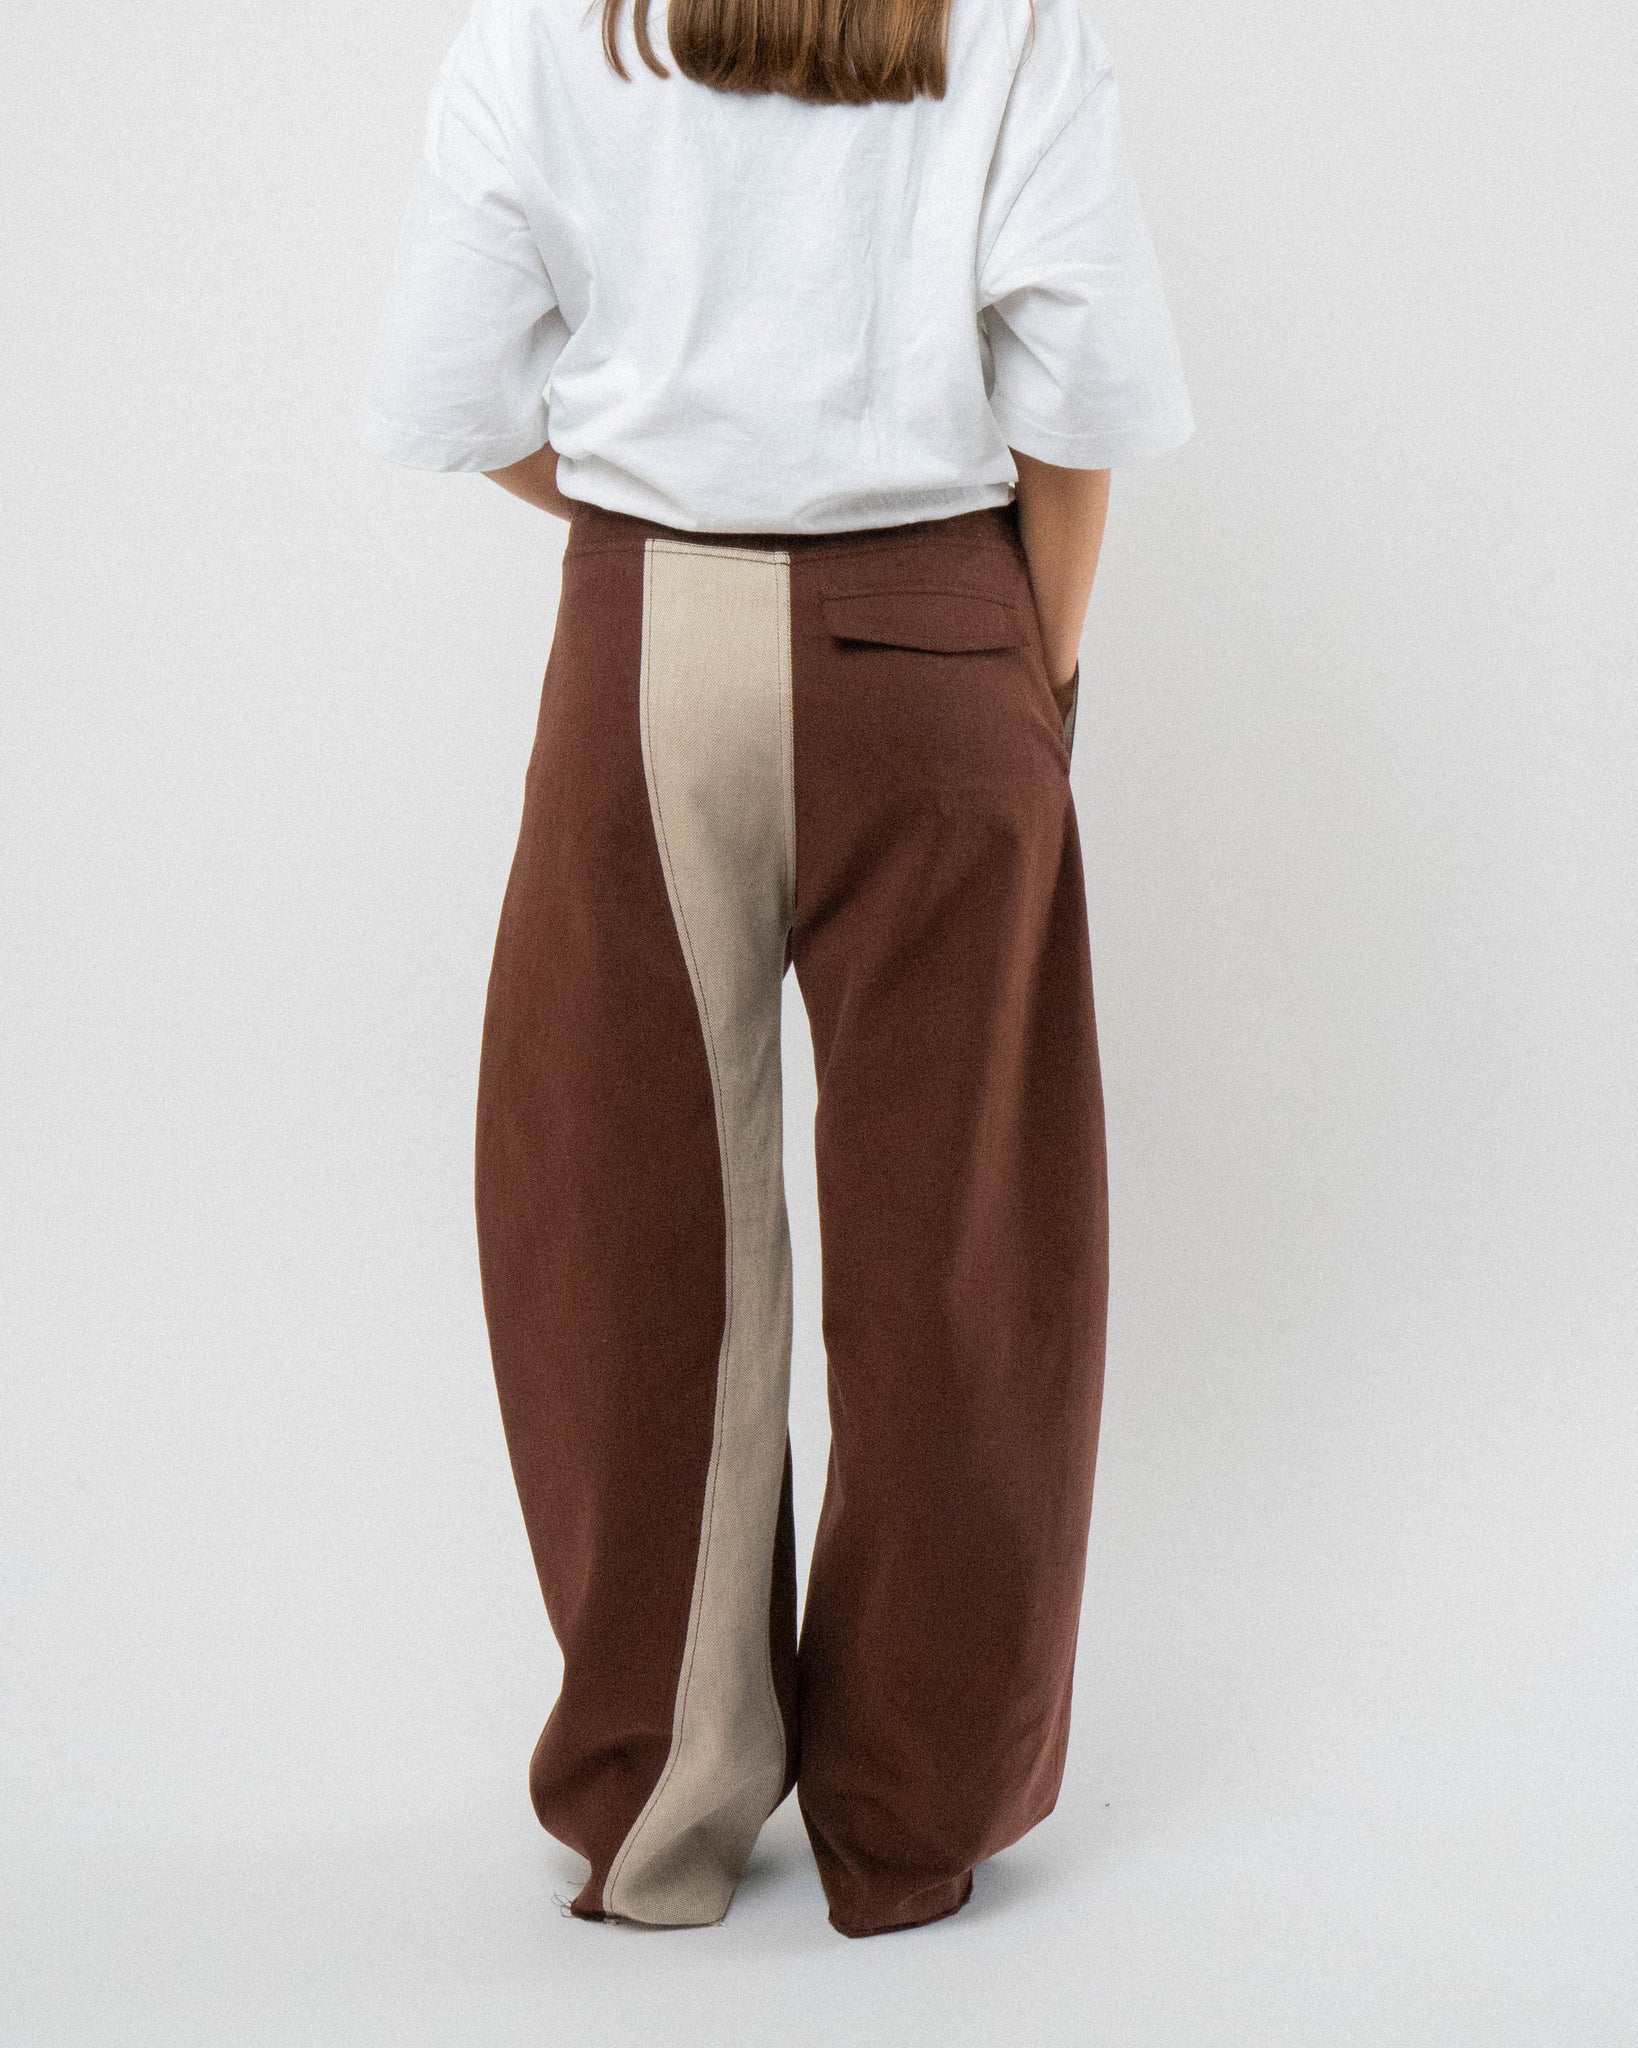 Chestnut Peachskin Trousers